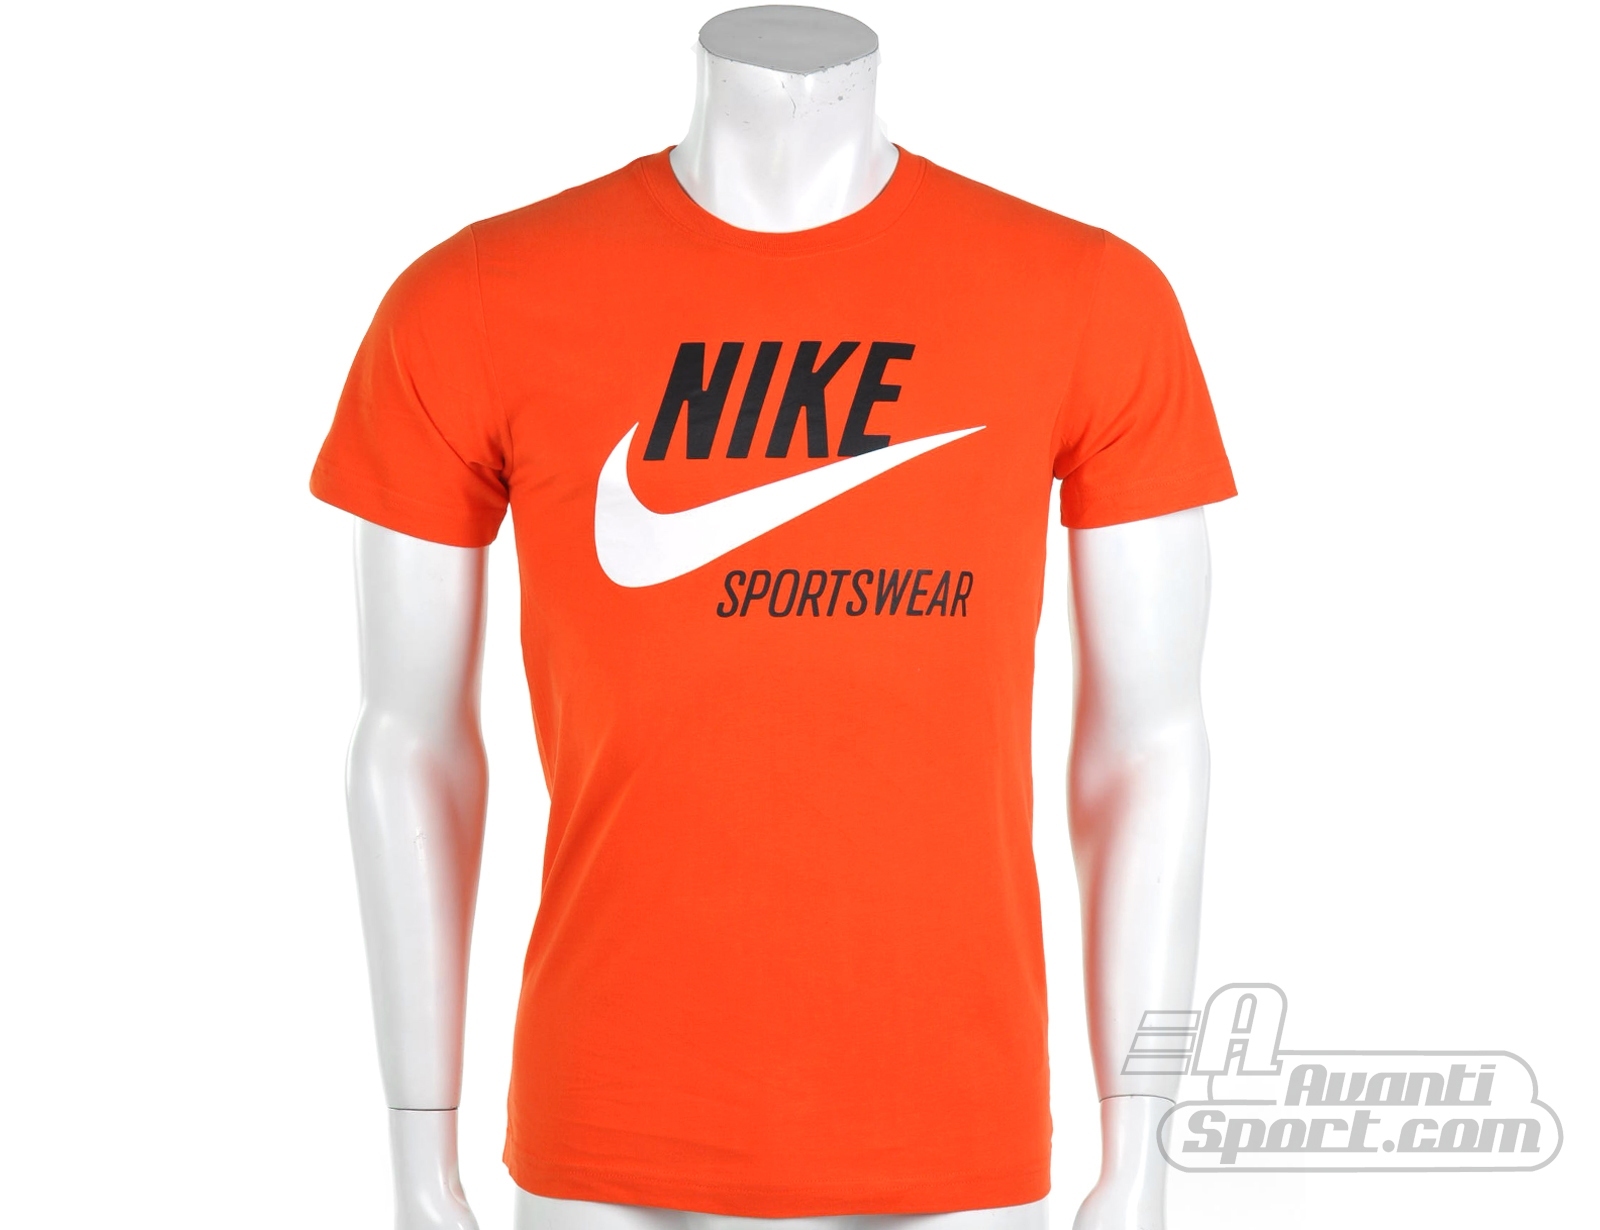 Avantisport - Nike - Icon 2 Graphic - Nike T-shirts